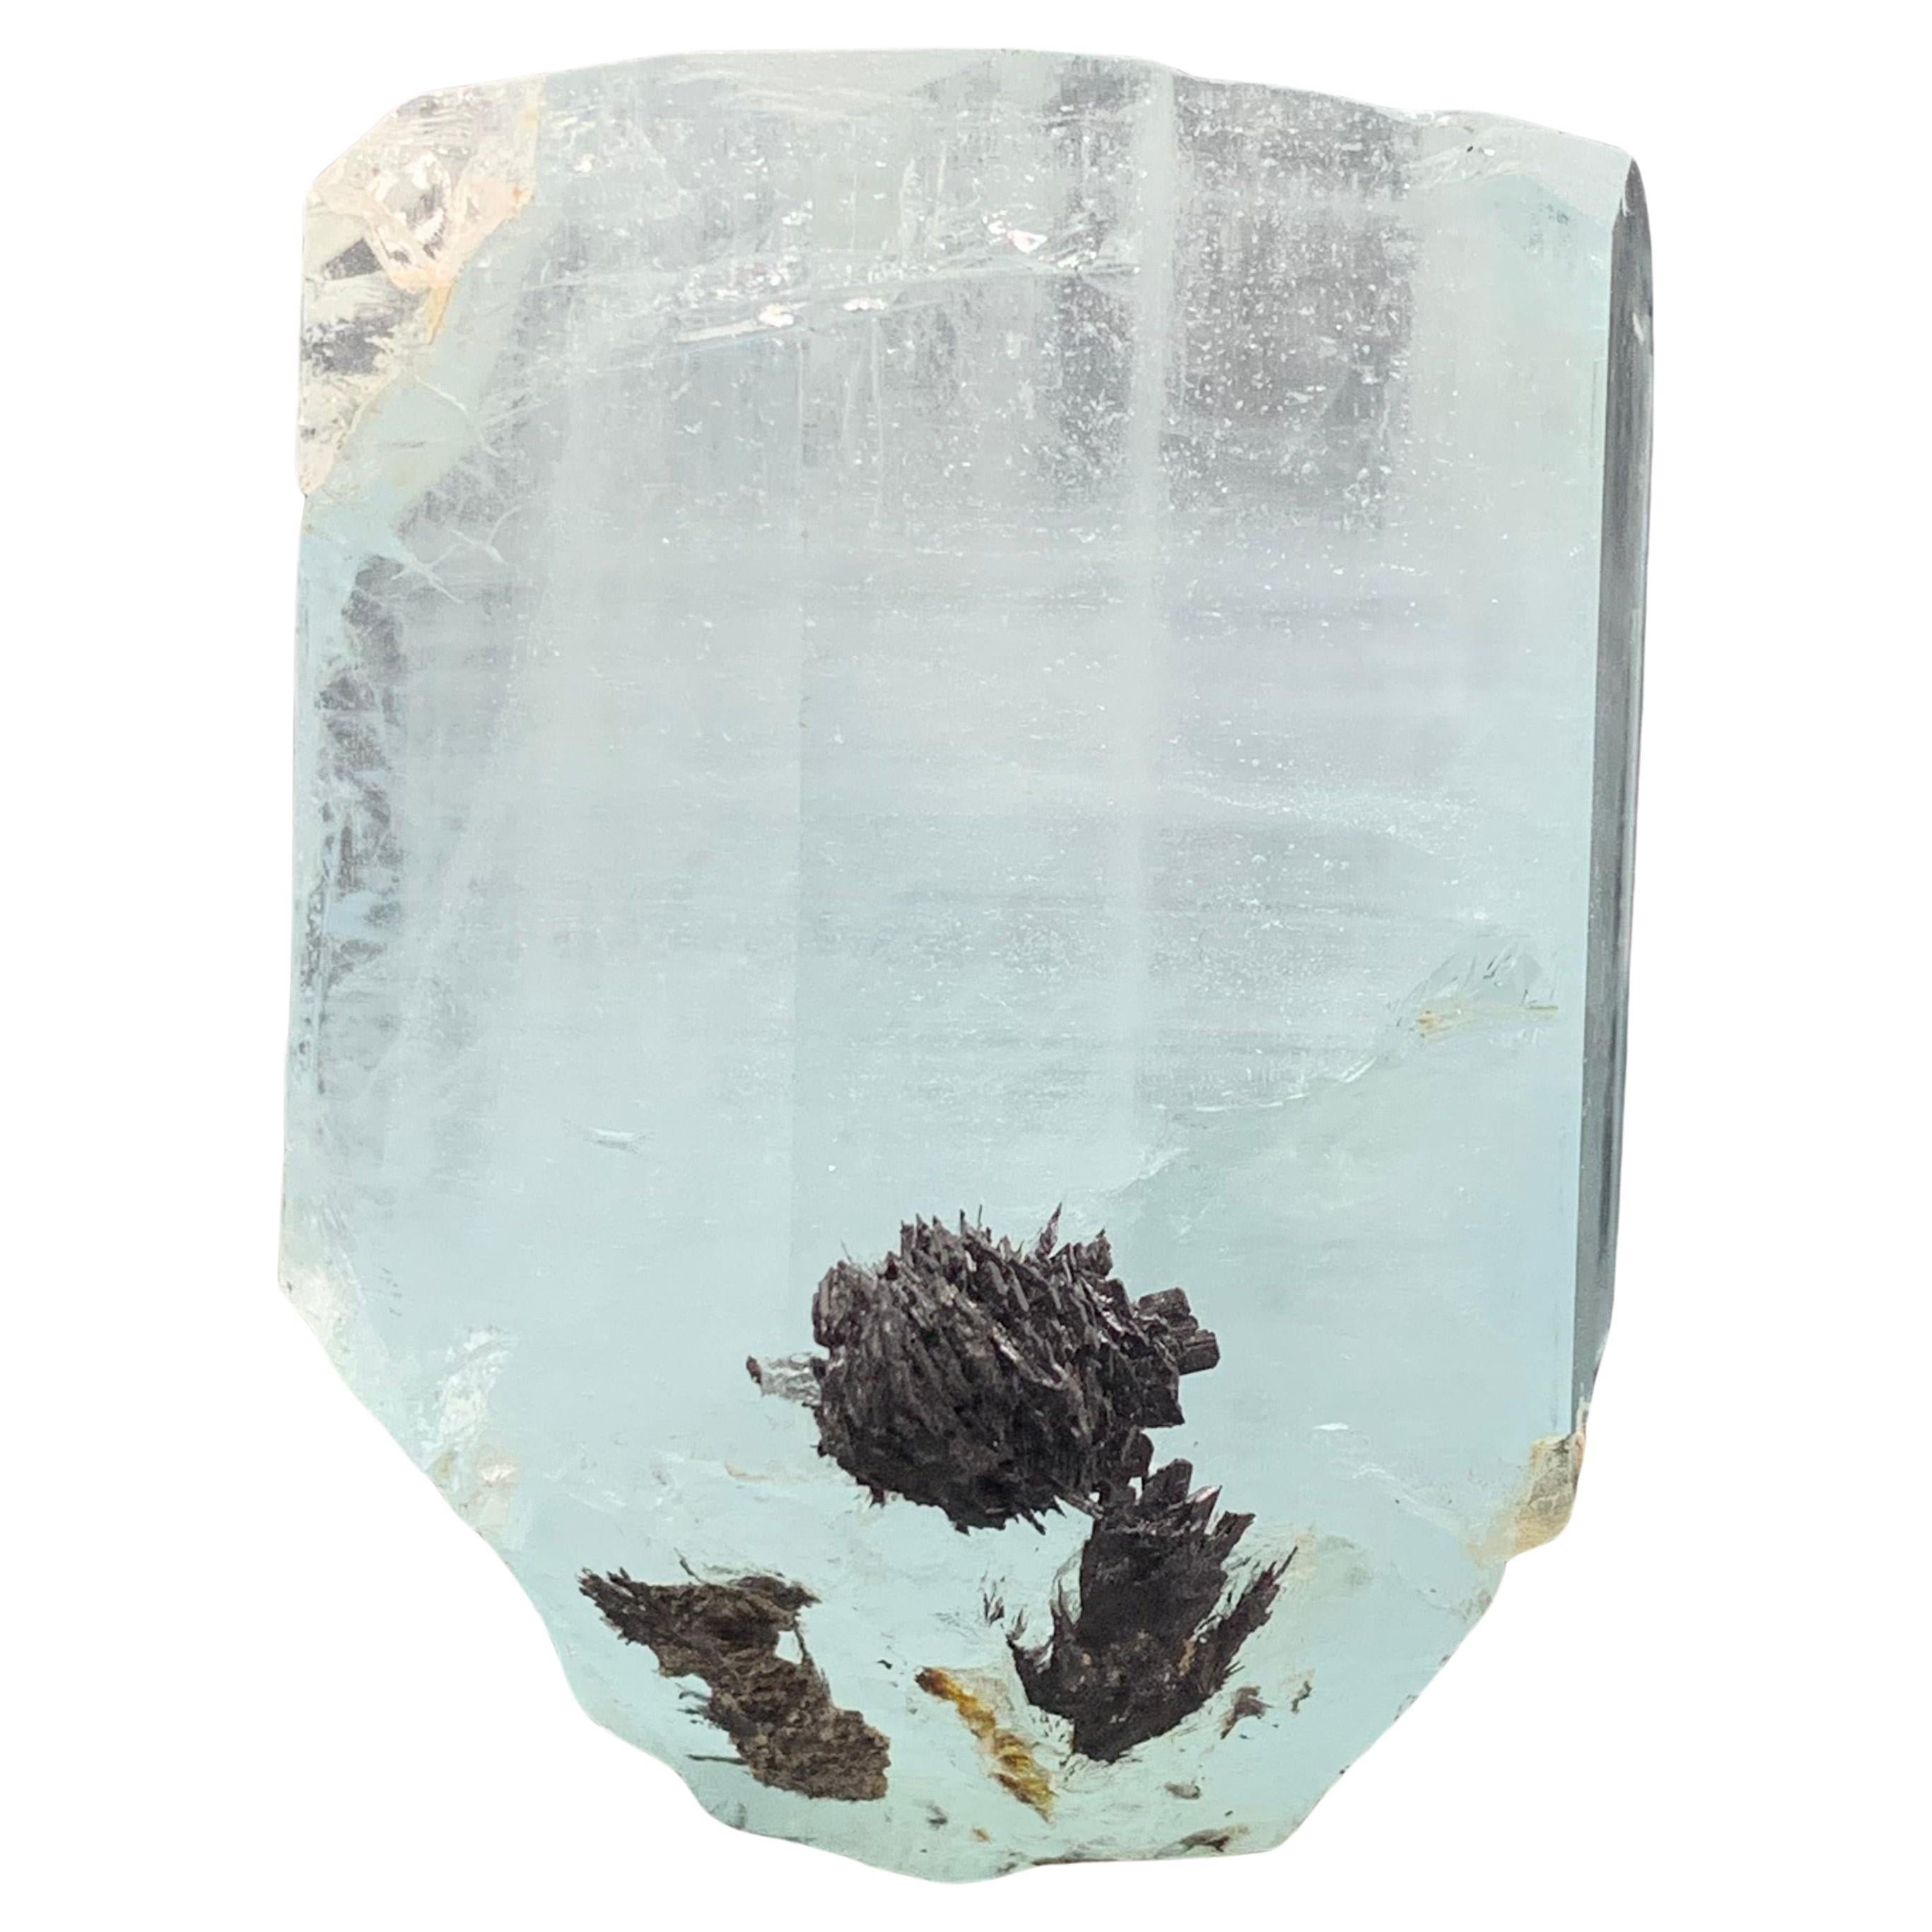 207,25 Gramm Aquamarin-Exemplar mit Schale aus Shigar Valley, Skardu, Pakistan